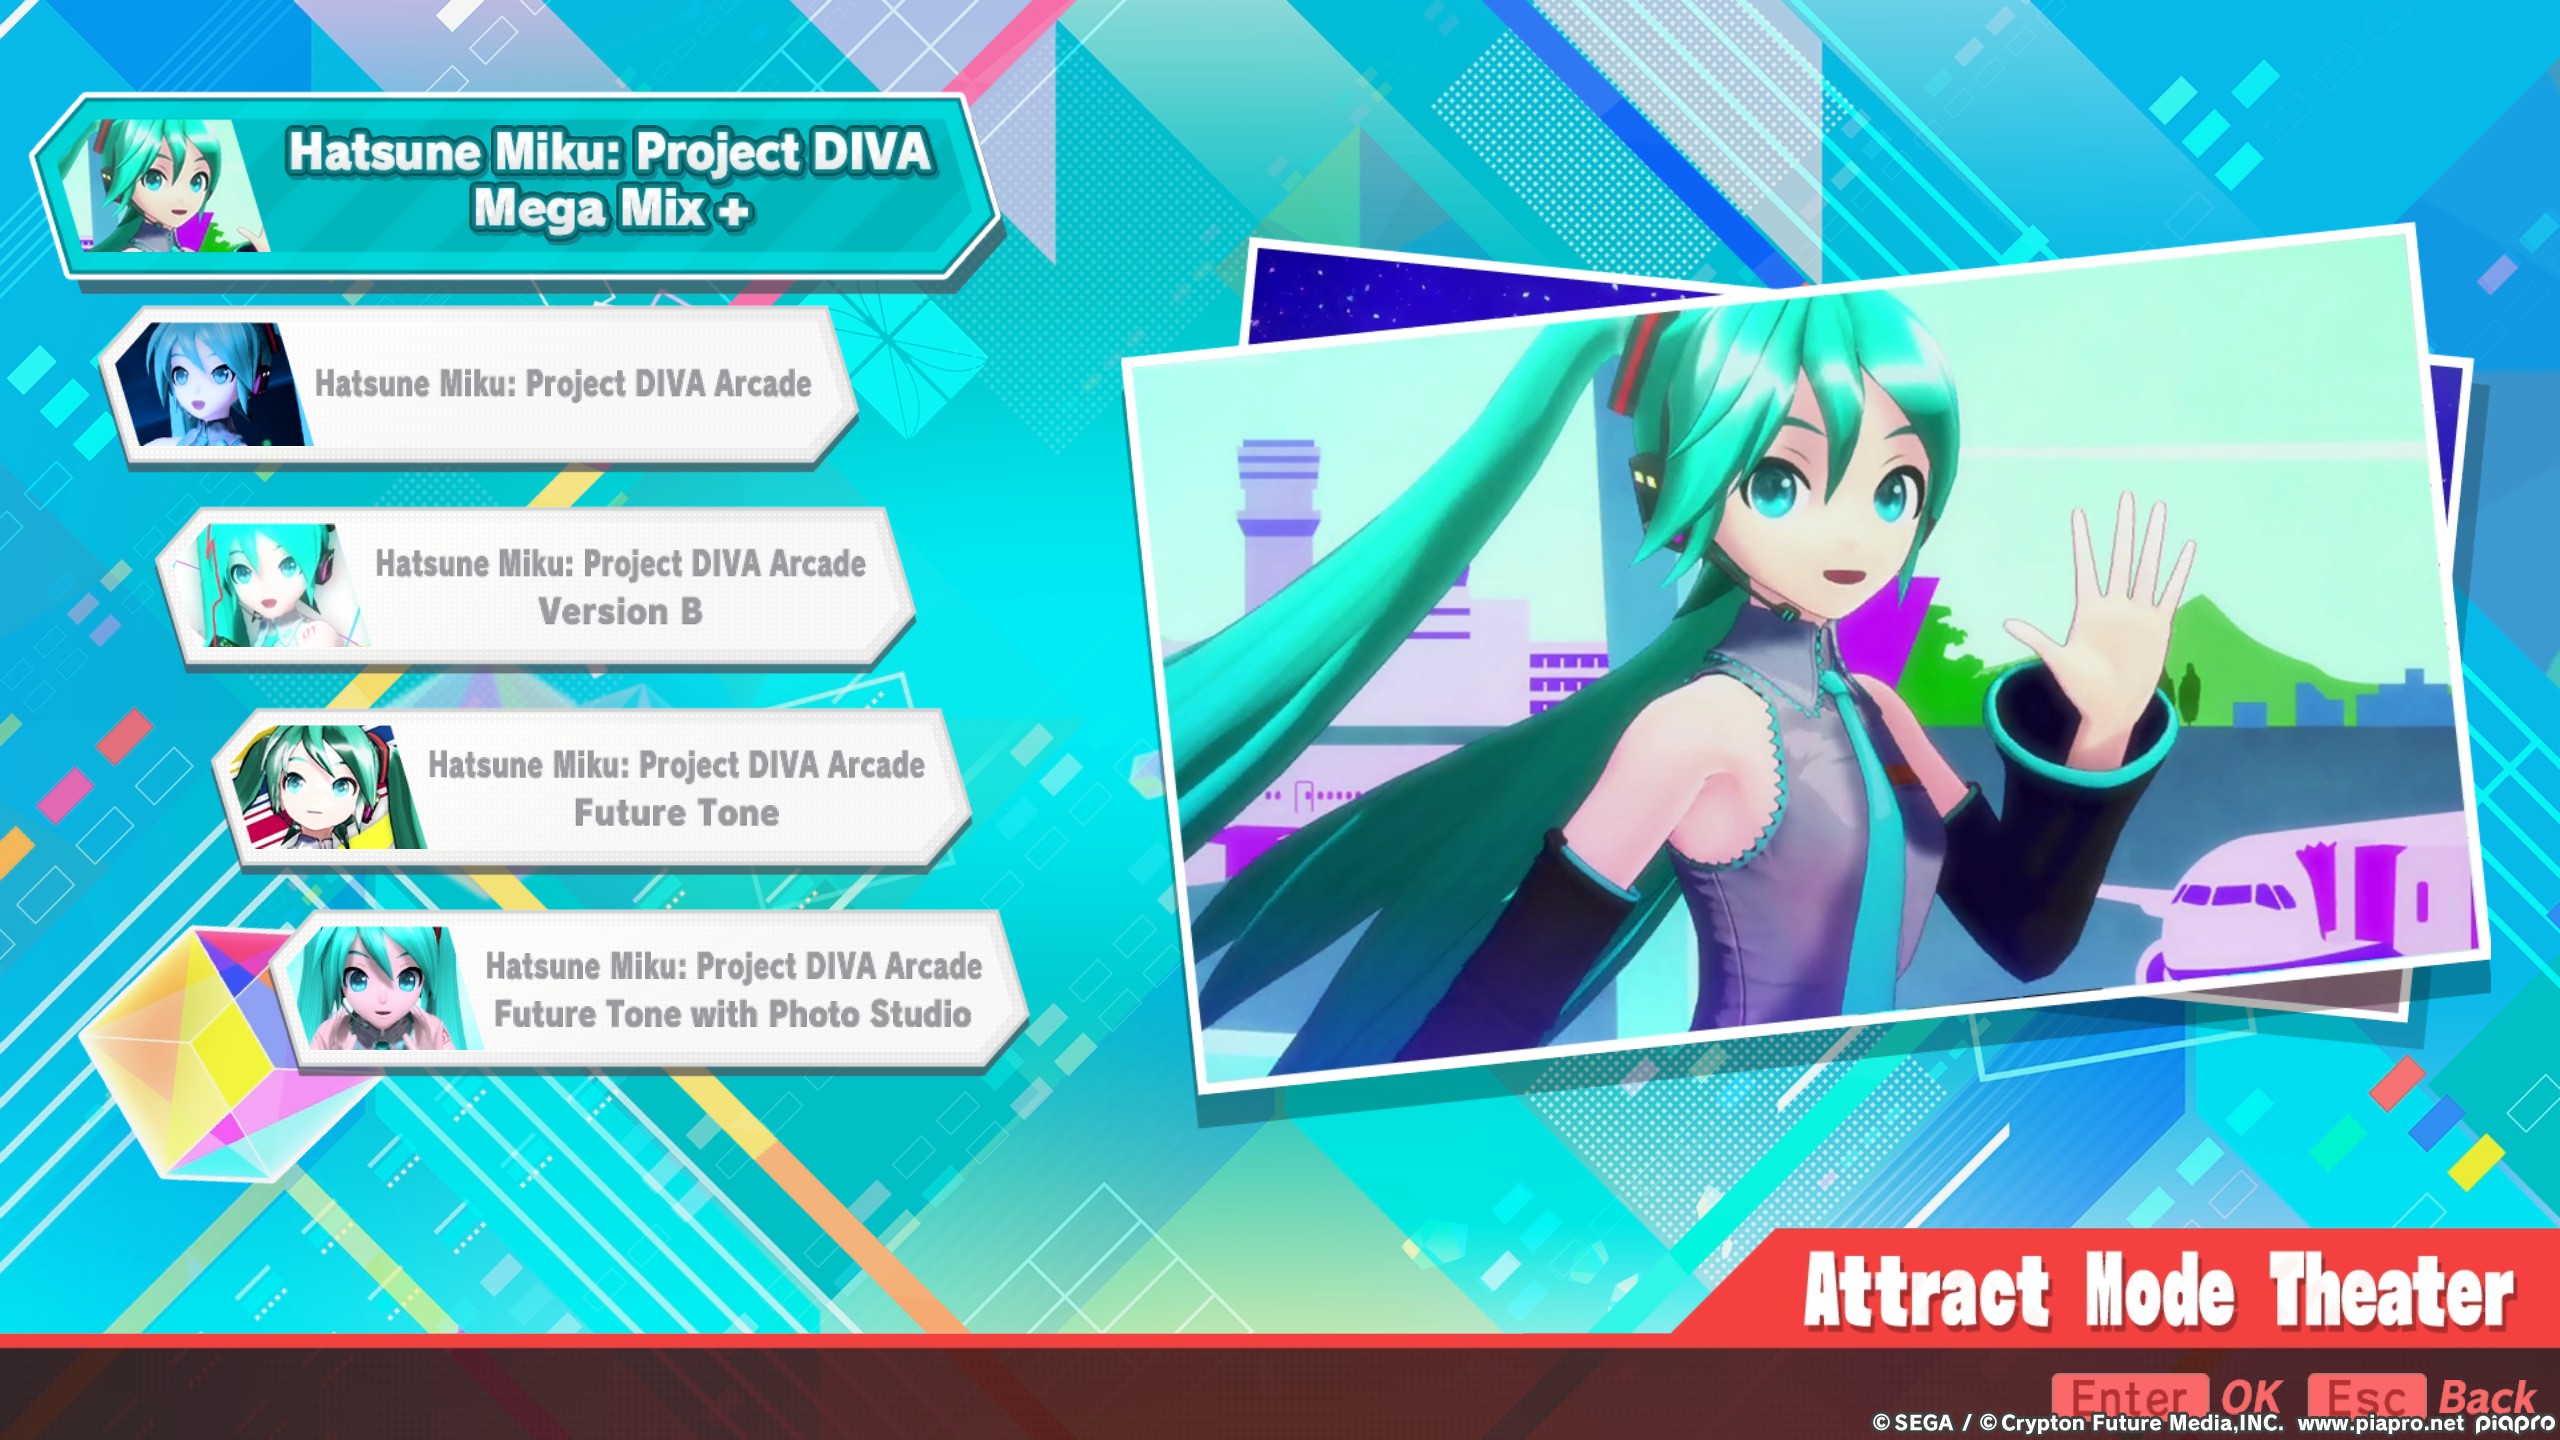 Hatsune Miku: Project DIVA Mega Mix+ Get All Achievements Guide and Secrets - Miscellaneous Achievements - 80C14CF